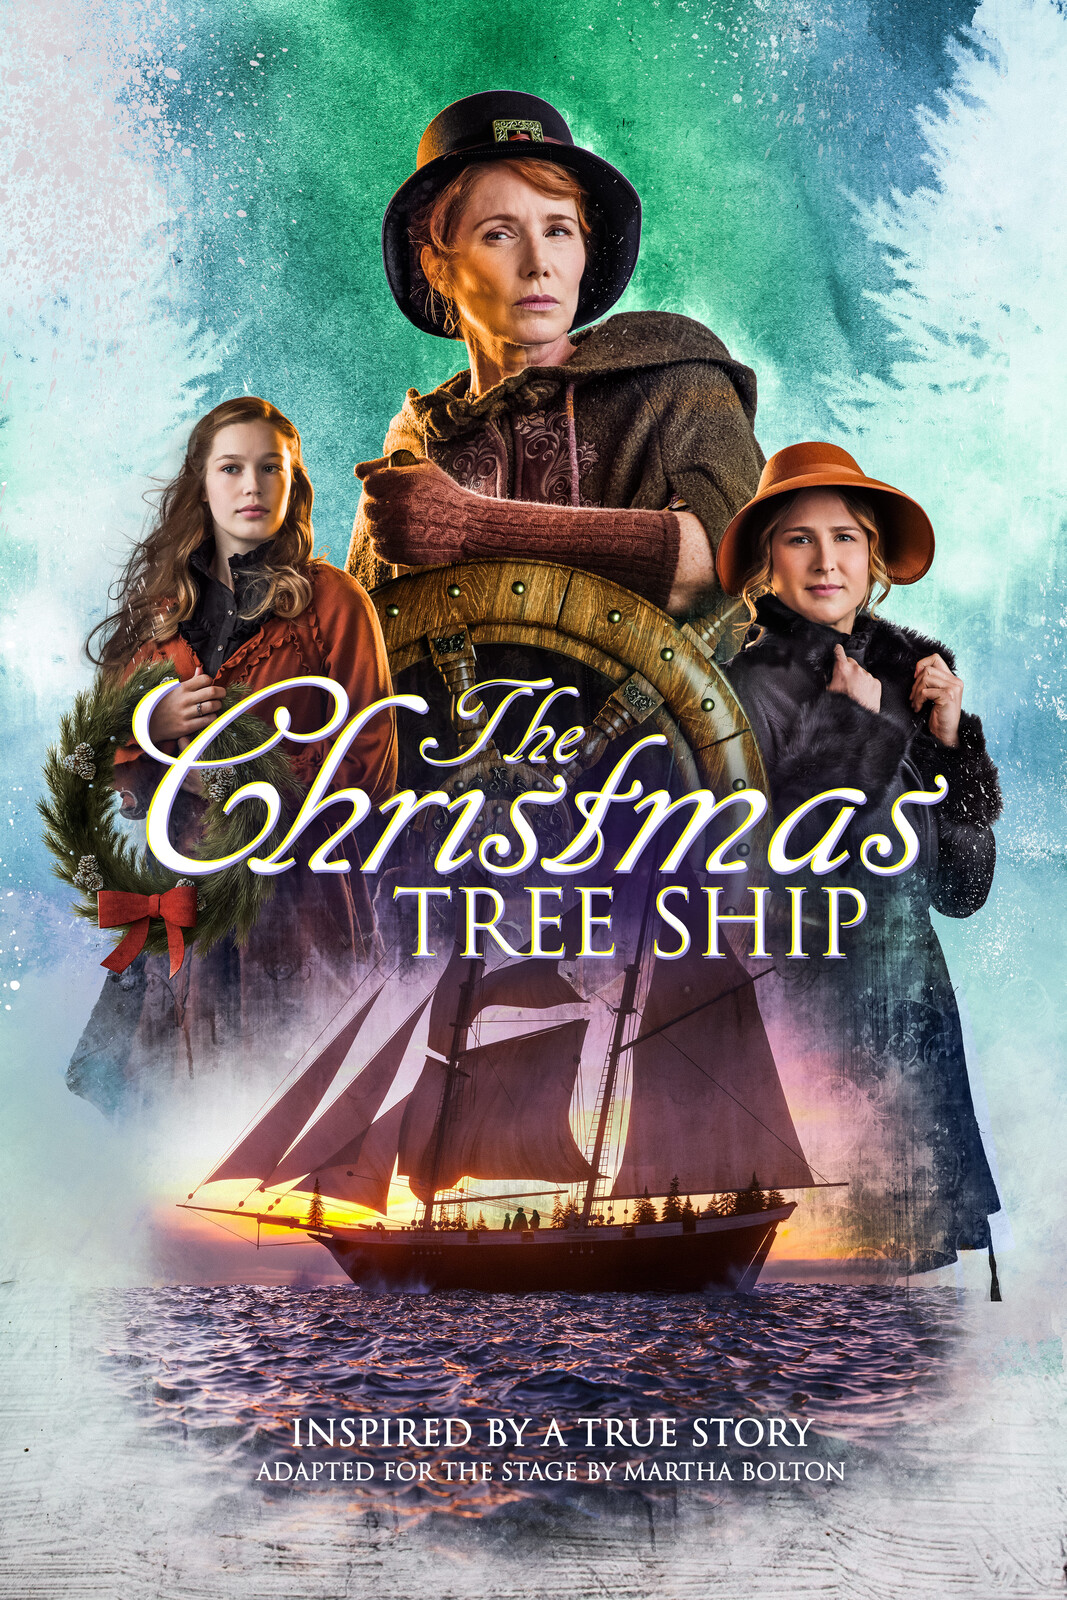 The Christmas Tree Ship